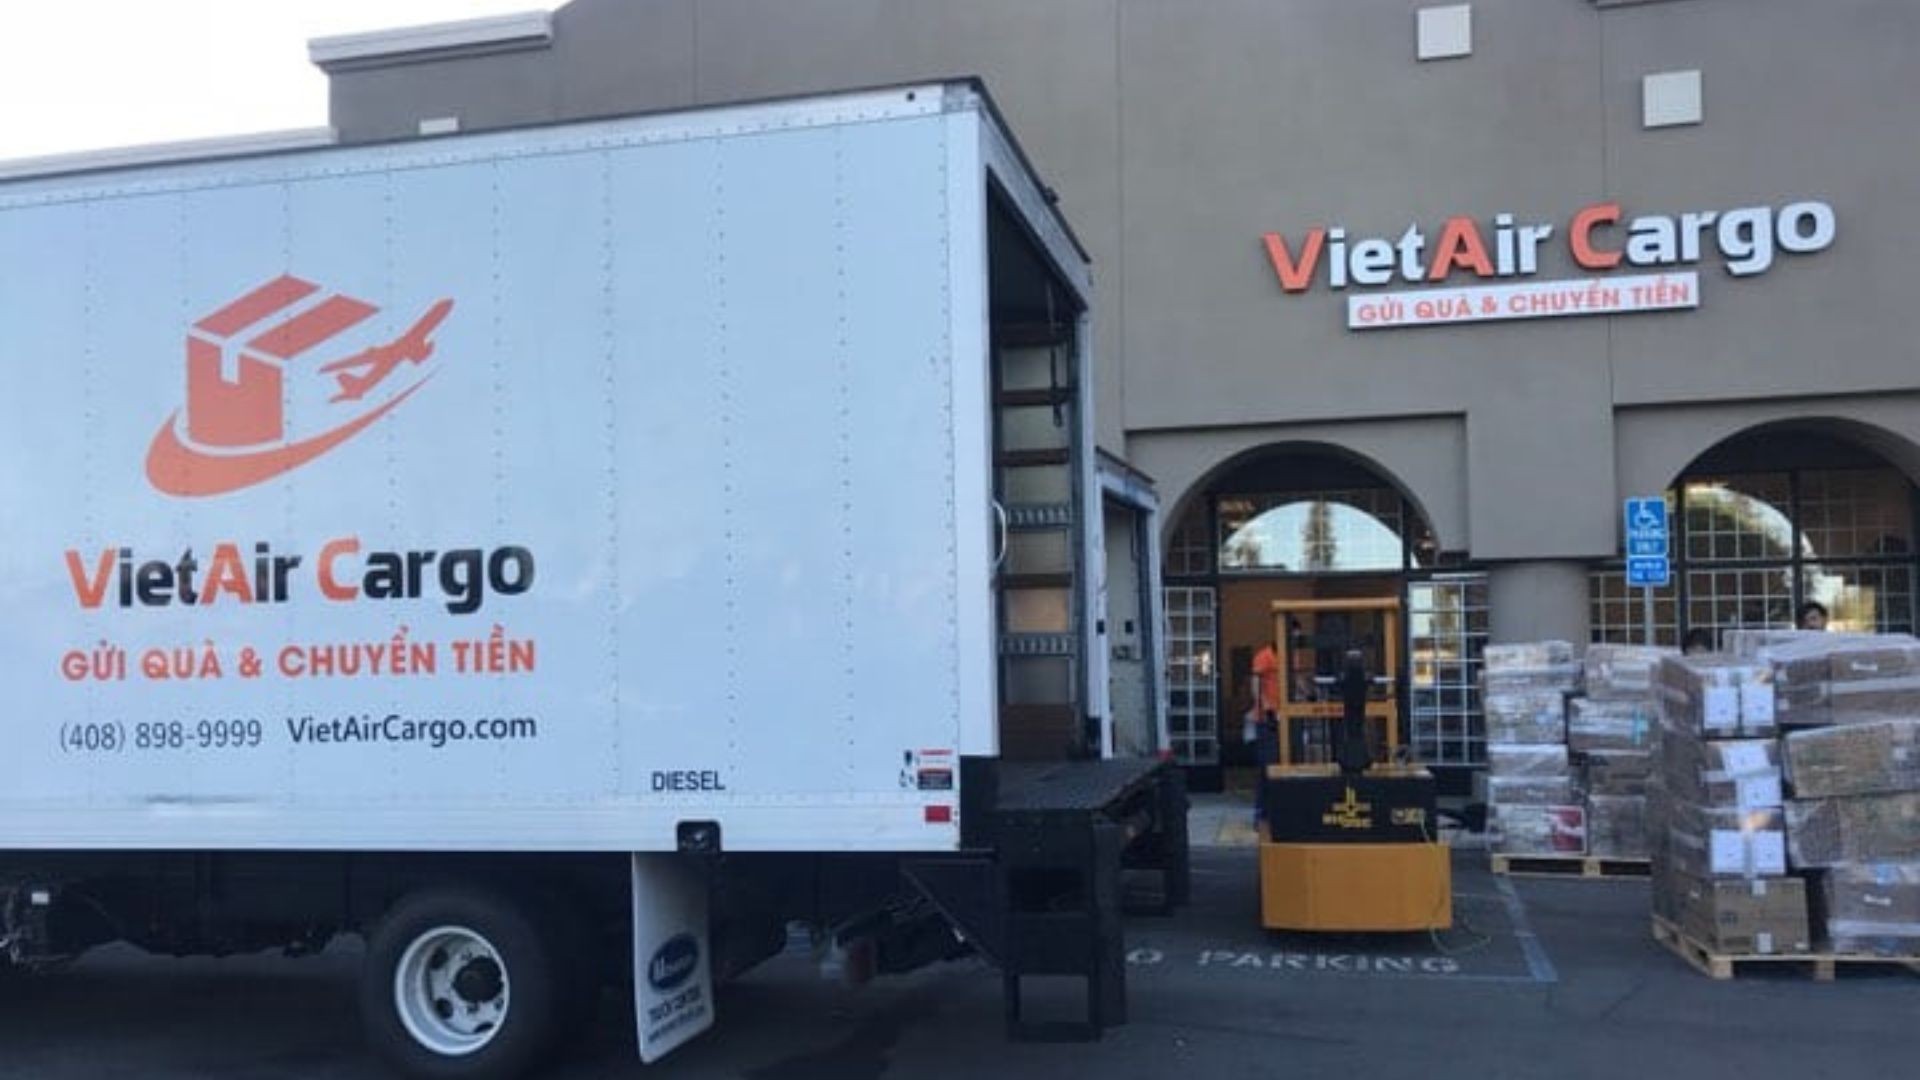 VietAir Cargo - Ship hàng đi Mỹ tại Hà Nội chất lượng